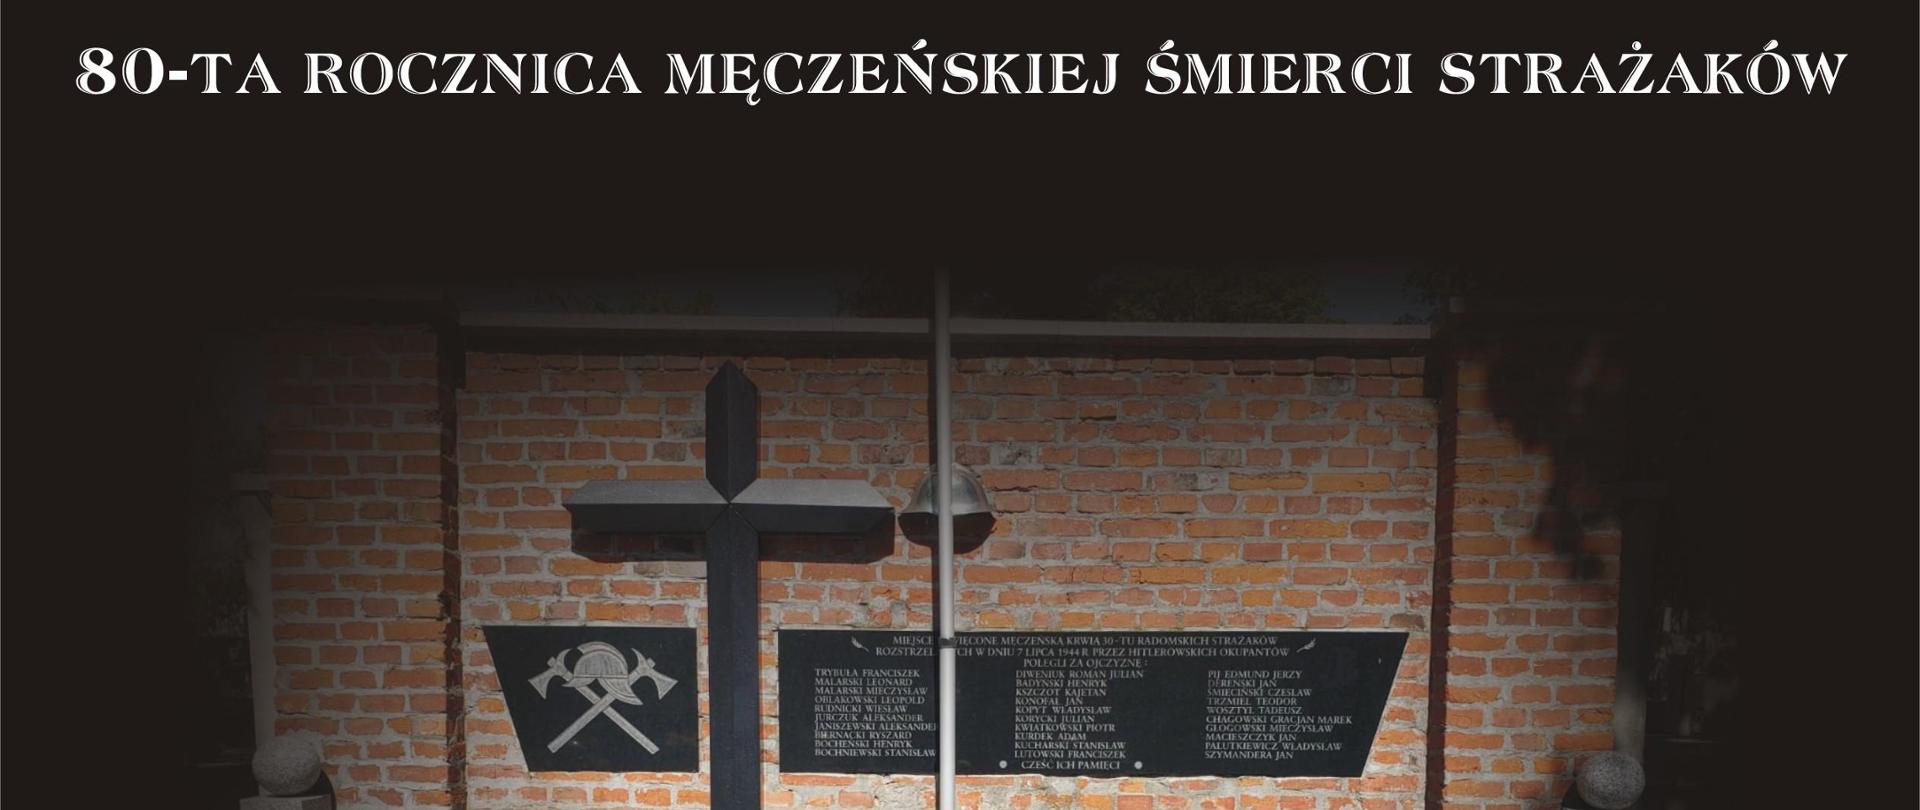 Zdjęcie wykonane na cmentarzu komunalnym. Na zdjęciu widać pomnik zamordowanych przez hitlerowskich żołnierzy strażaków. Na płycie położony jest wieniec w kolorze zielonym z biało – czerwoną szarfą. Tło zdjęcia w kolorze czarnym. Na górze nad zdjęciem widnie napis w kolorze białym 80-ta rocznica męczeńskiej śmierci strażaków